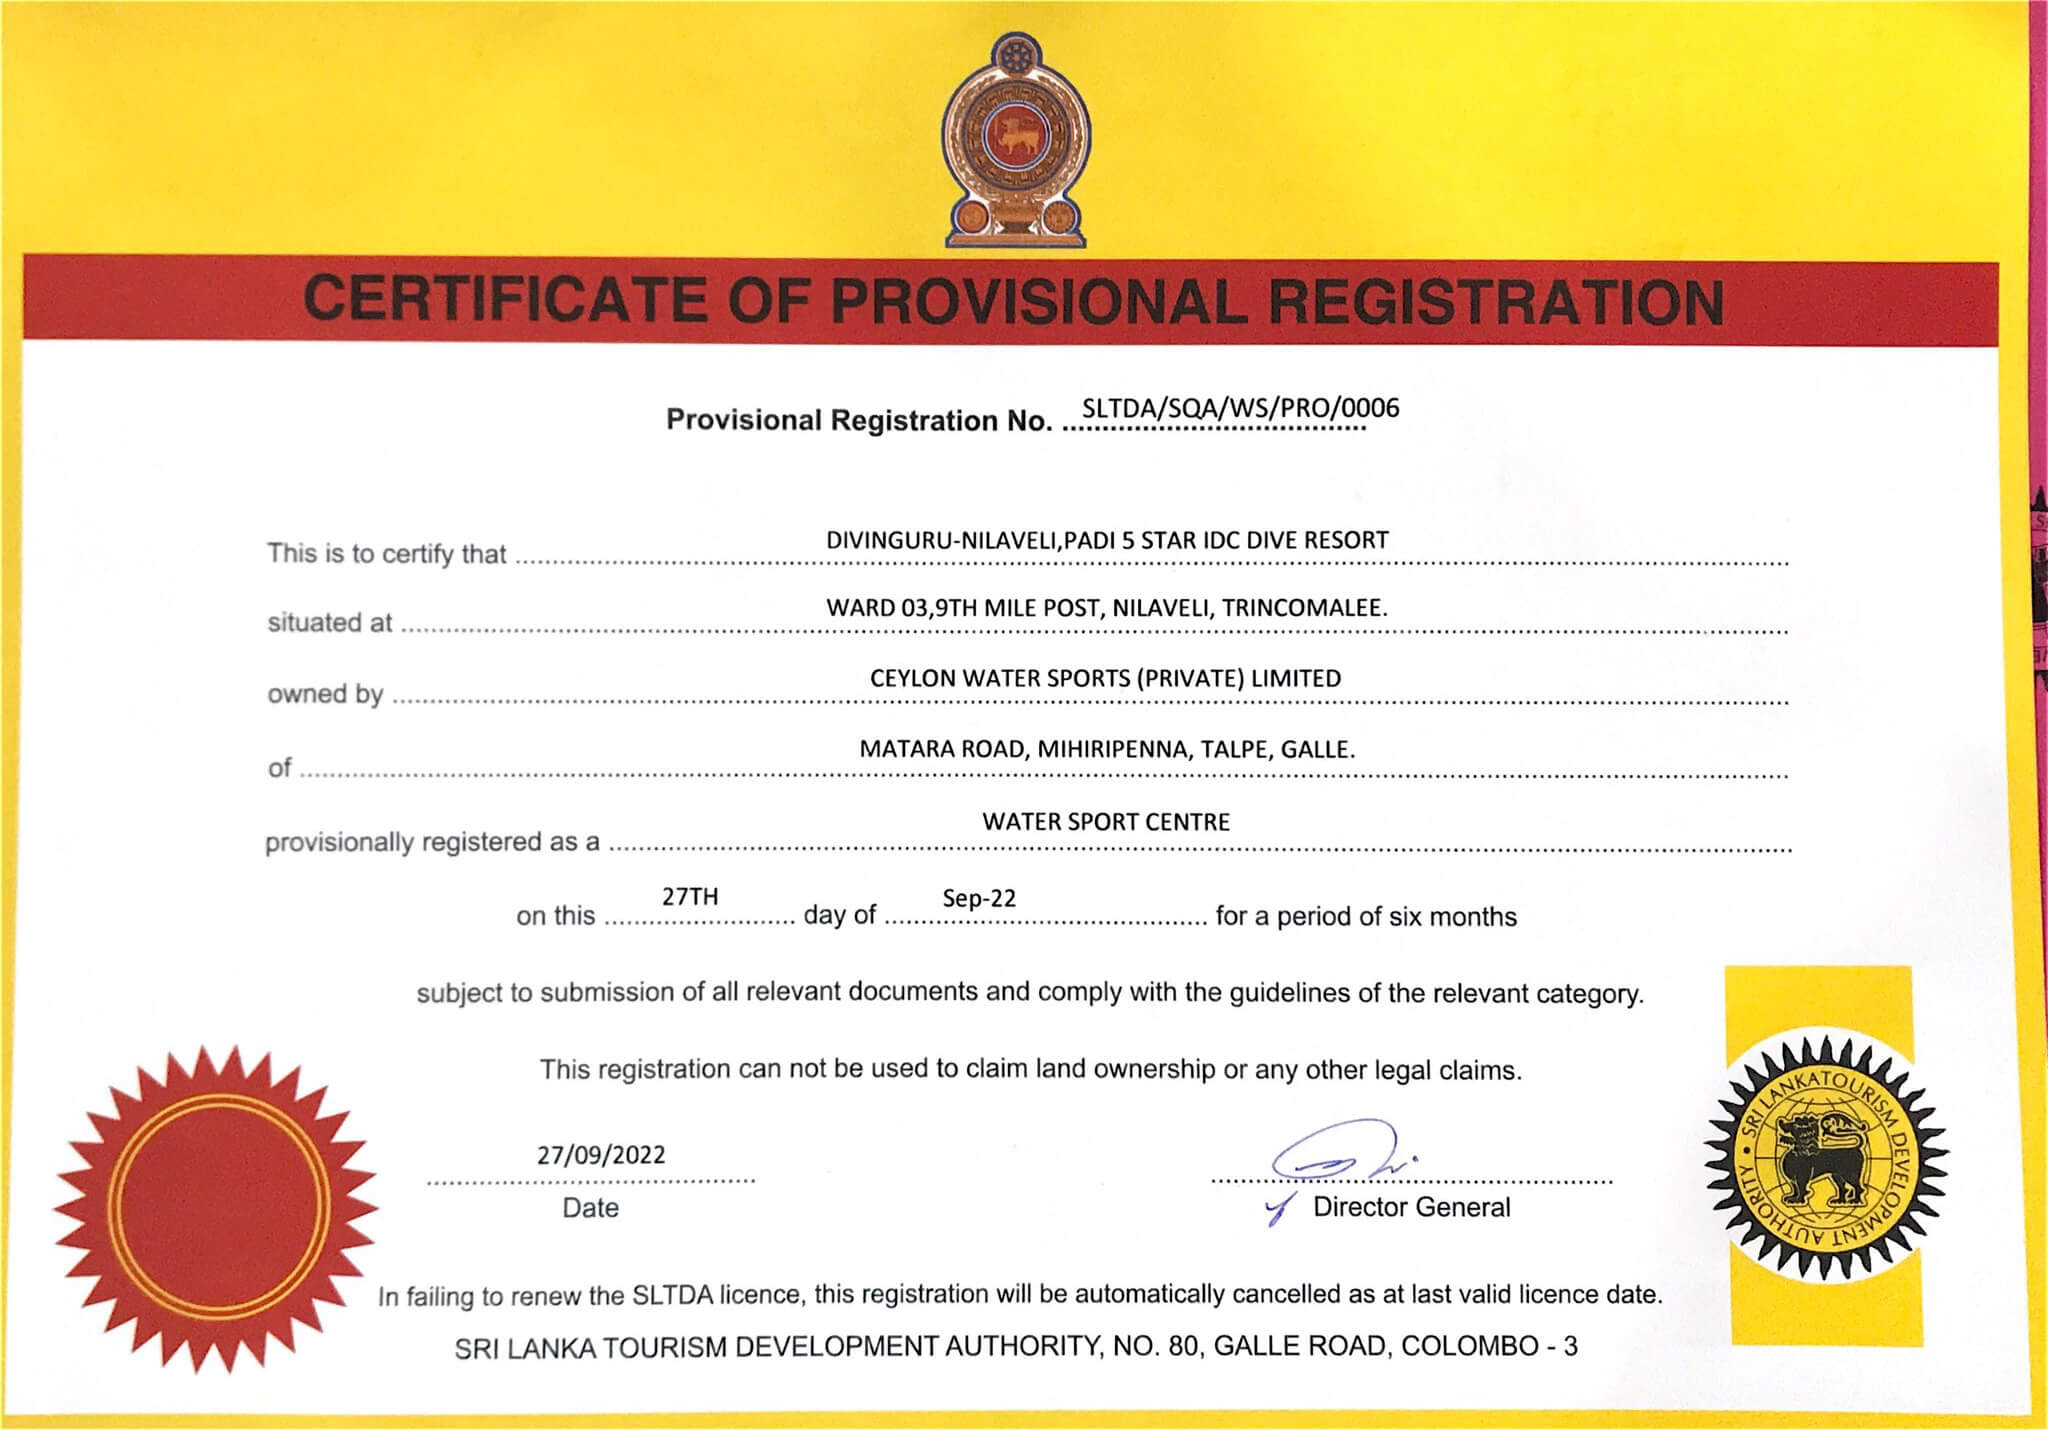 Tourist Board certificate for our diving centre Divinguru Nilaveli